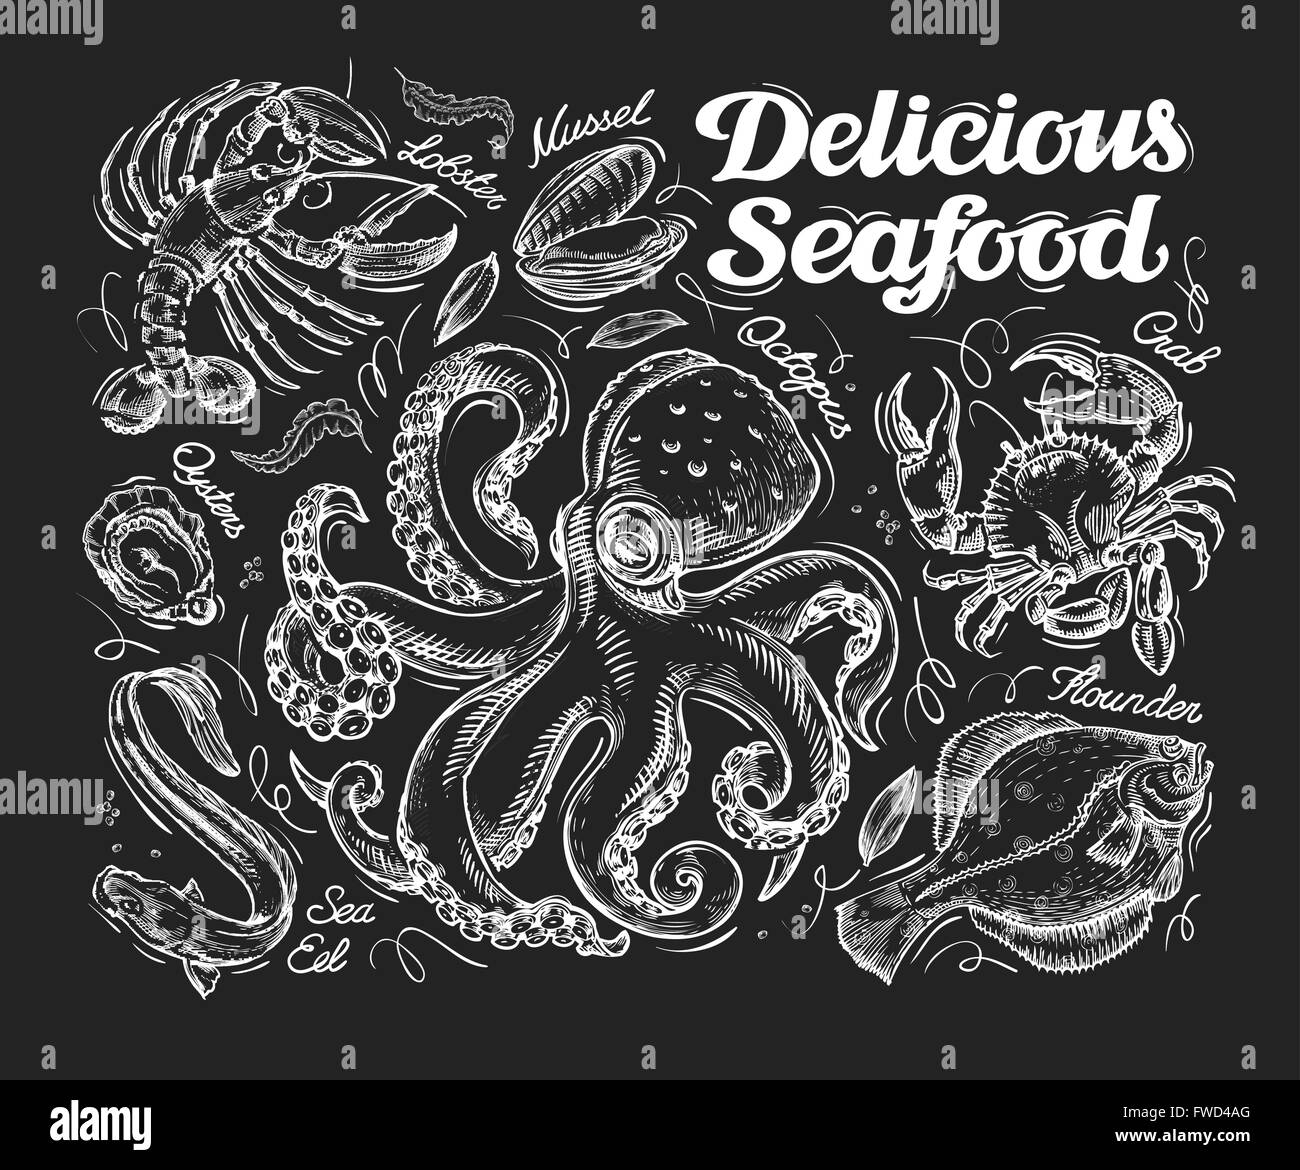 Köstliche Meeresfrüchte. Hand gezeichnete Skizze Tintenfisch, Krabben, Fische, Flunder, Aal, Austern, Muscheln, Hummer. Vektor-illustration Stock Vektor